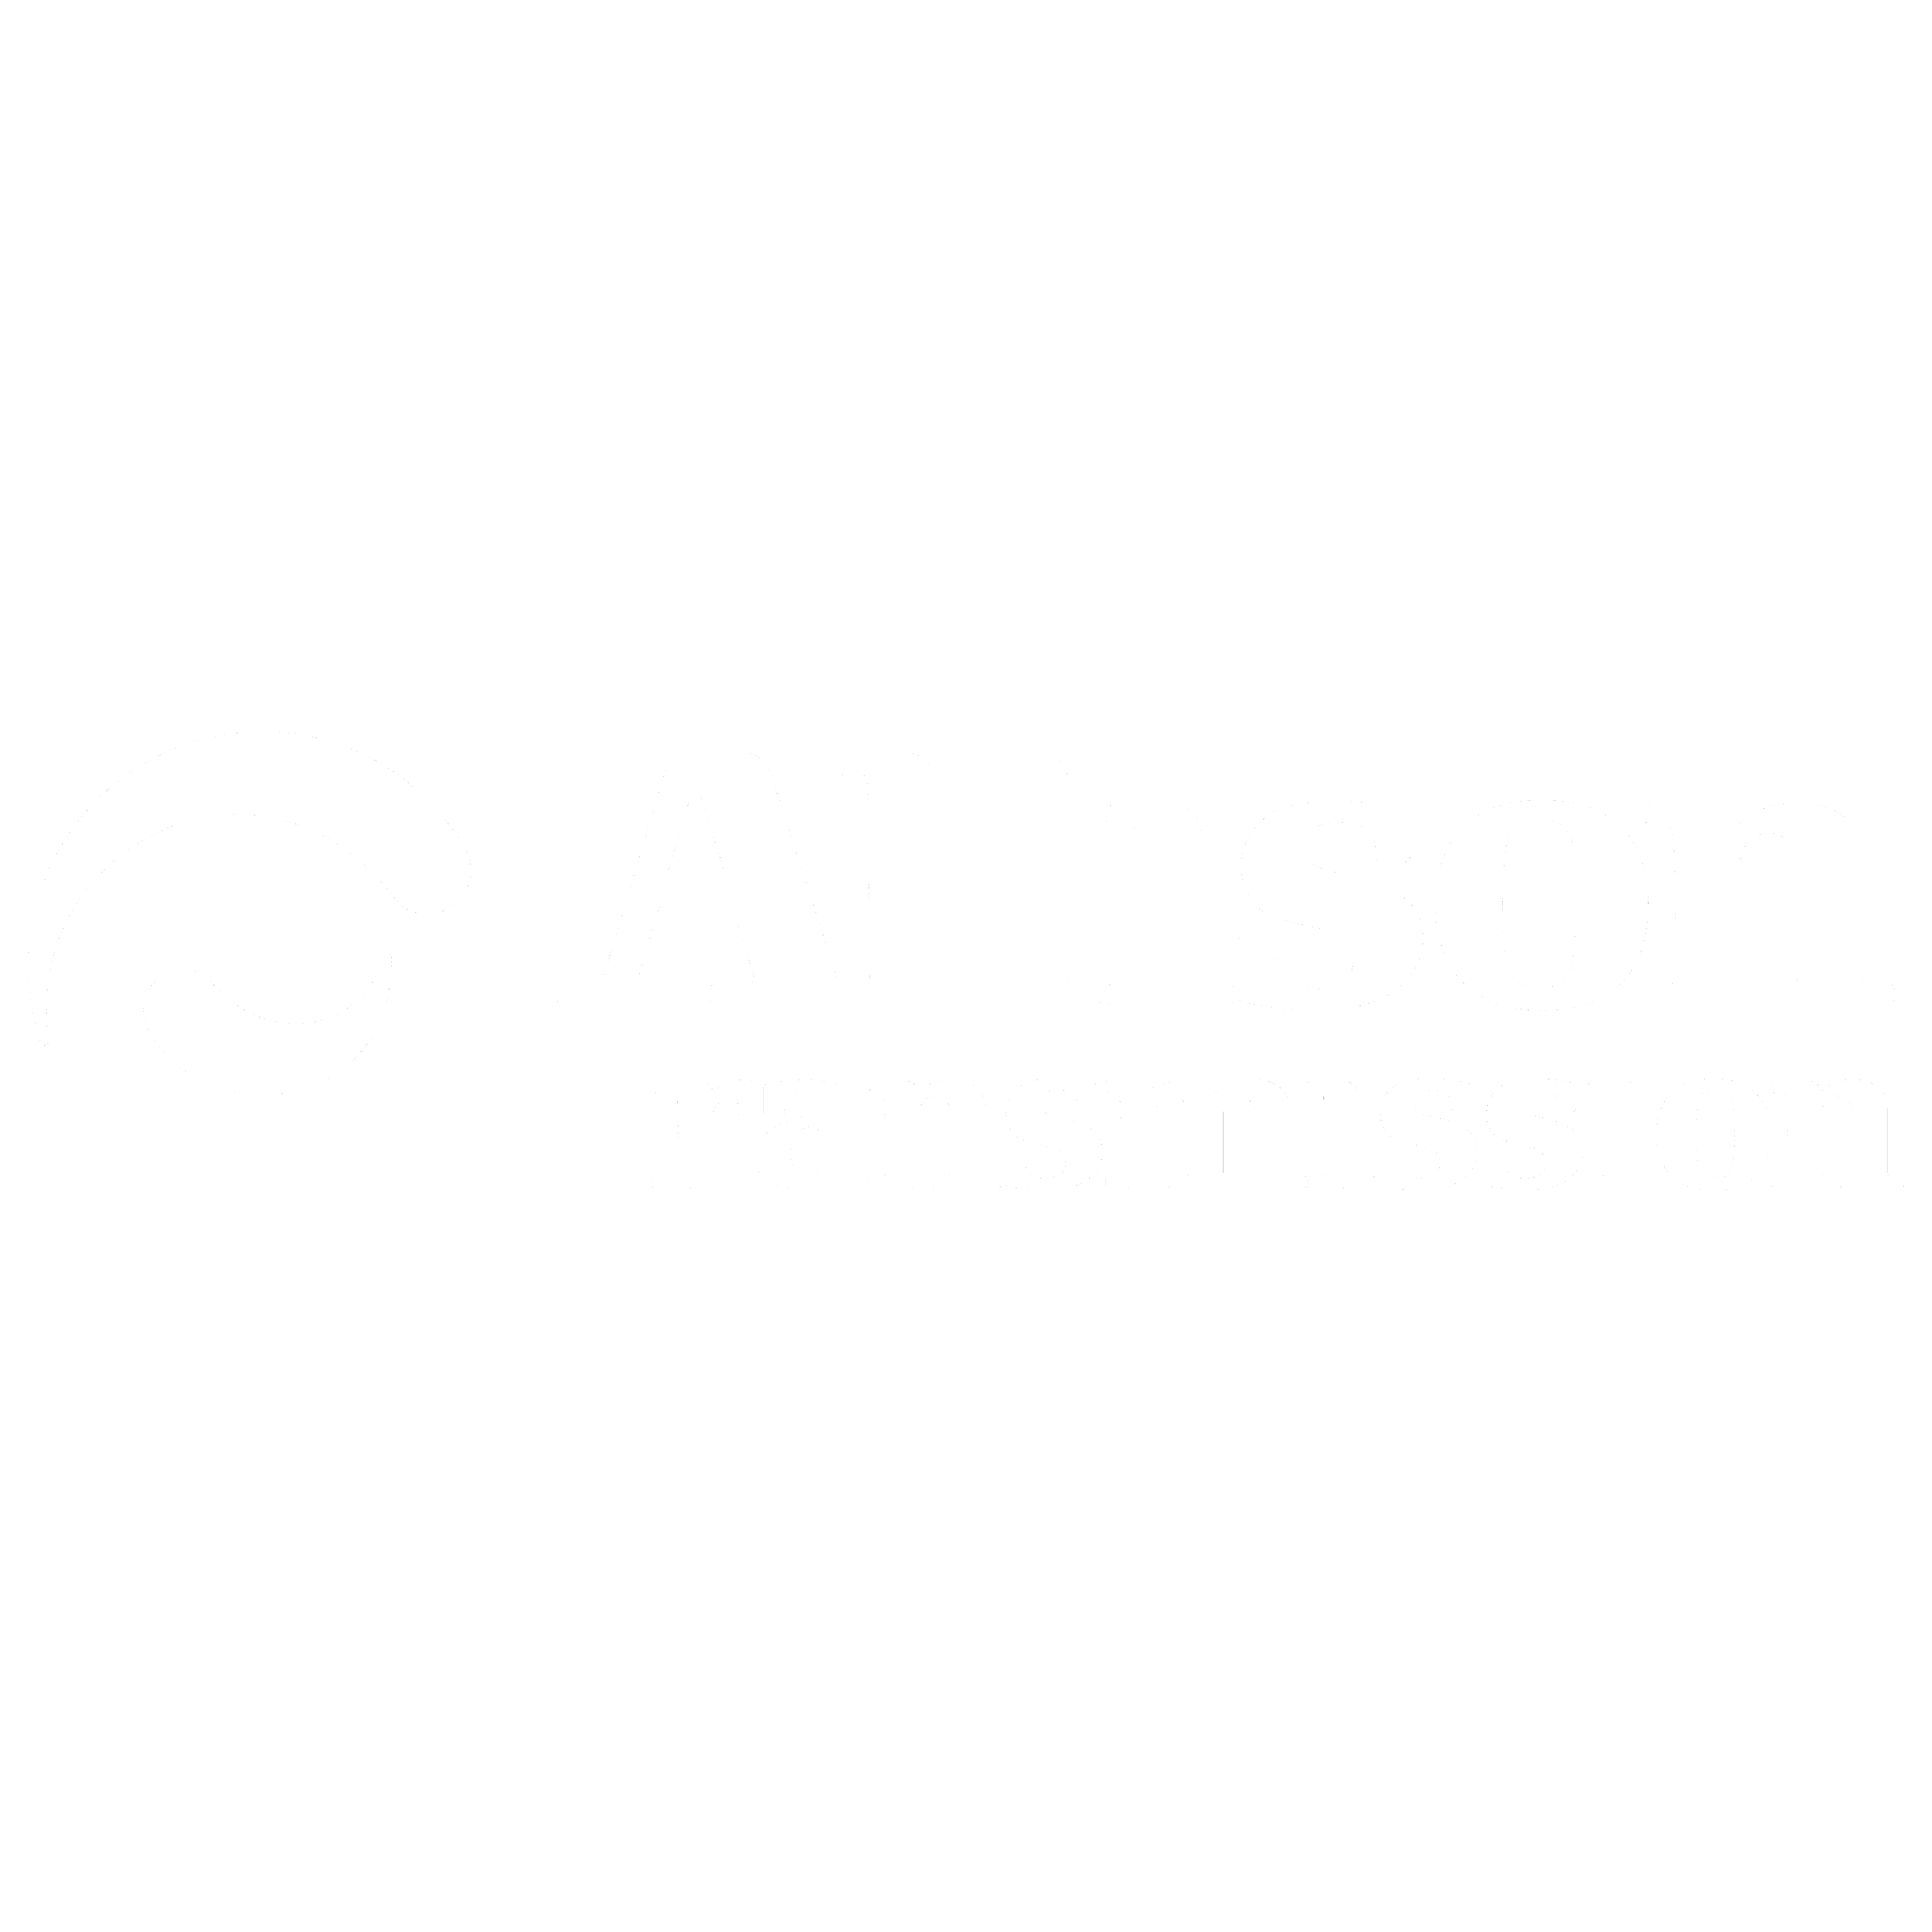 Allison Transmission Logo - Allison Transmission Logo PNG Transparent & SVG Vector - Freebie Supply